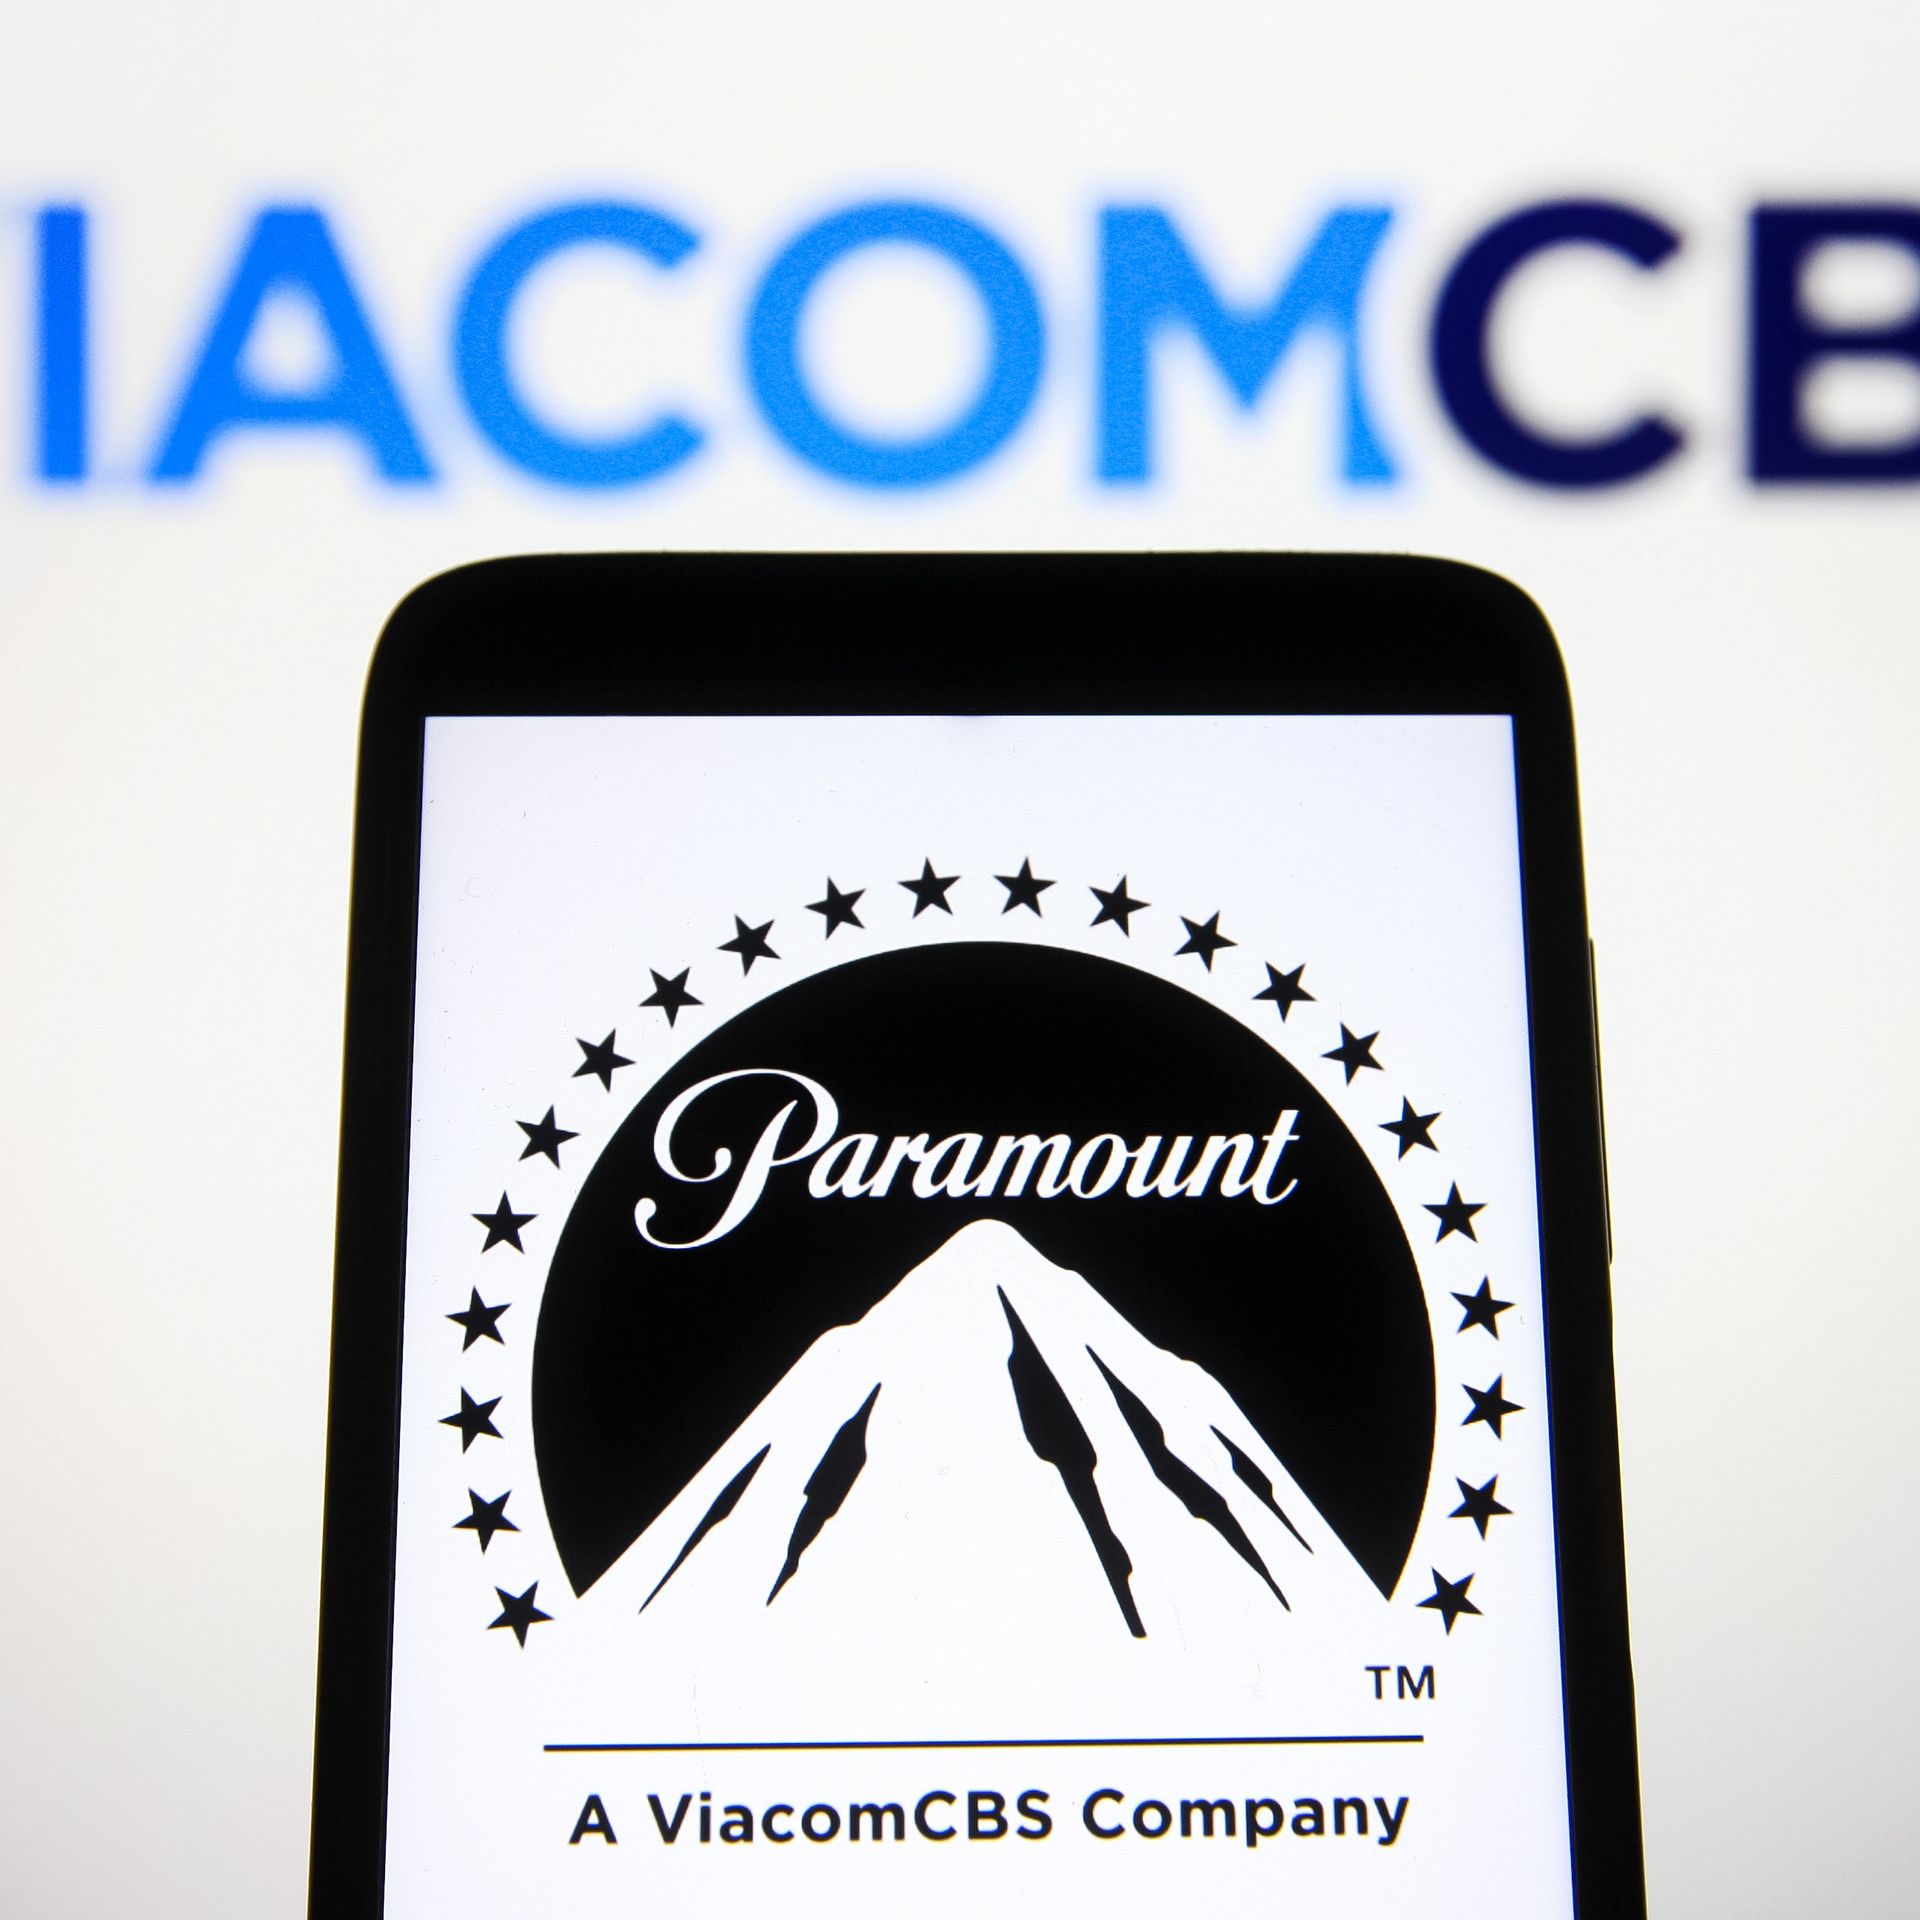 Viacomcbs share price